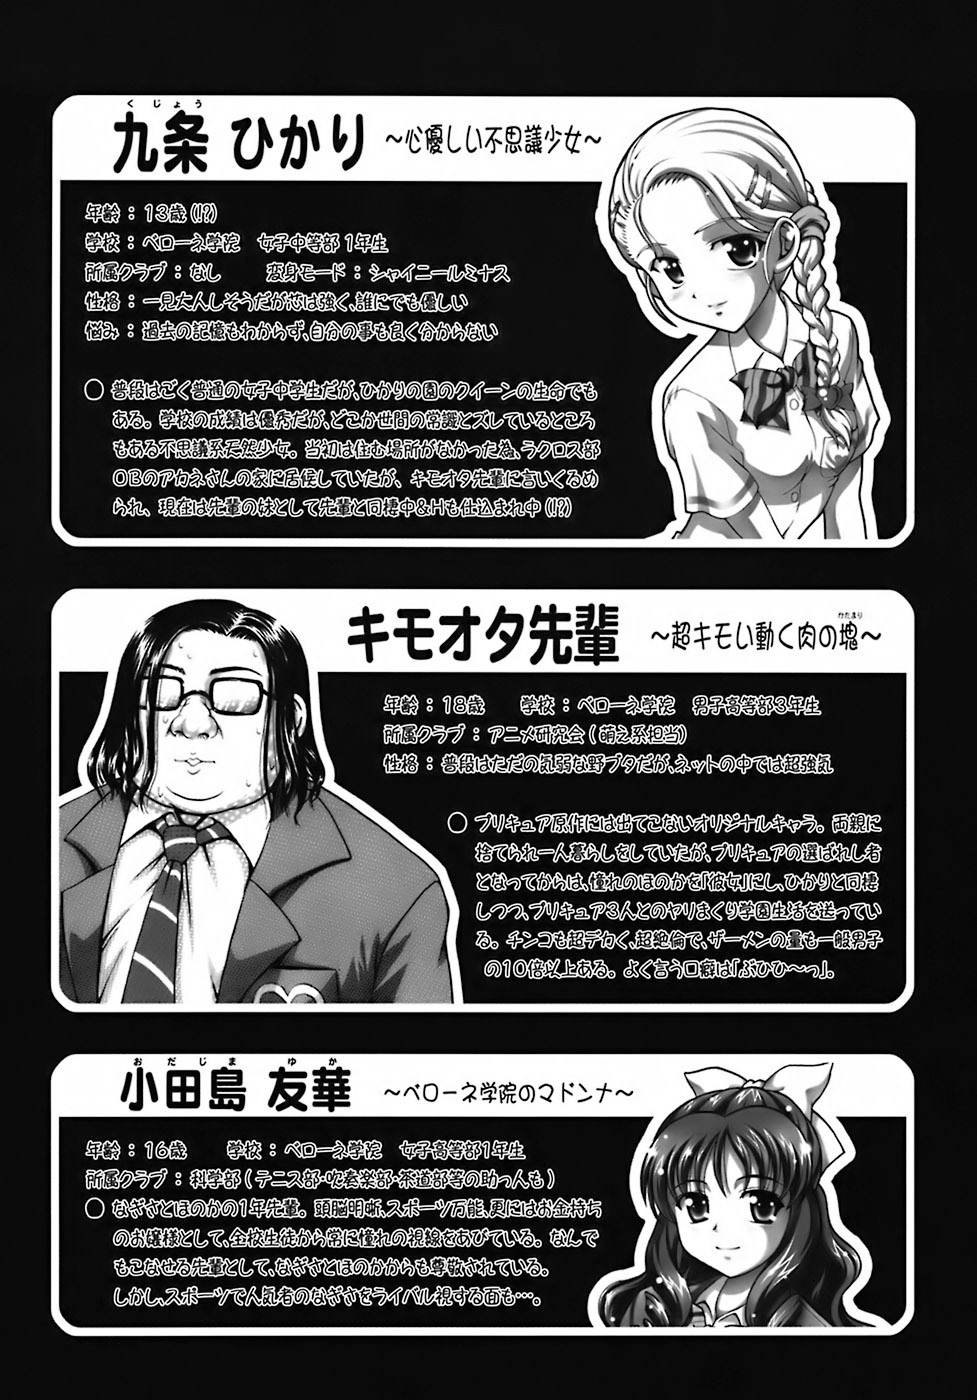 Milk Hunters 6 futari wa pretty cure 4 hentai manga